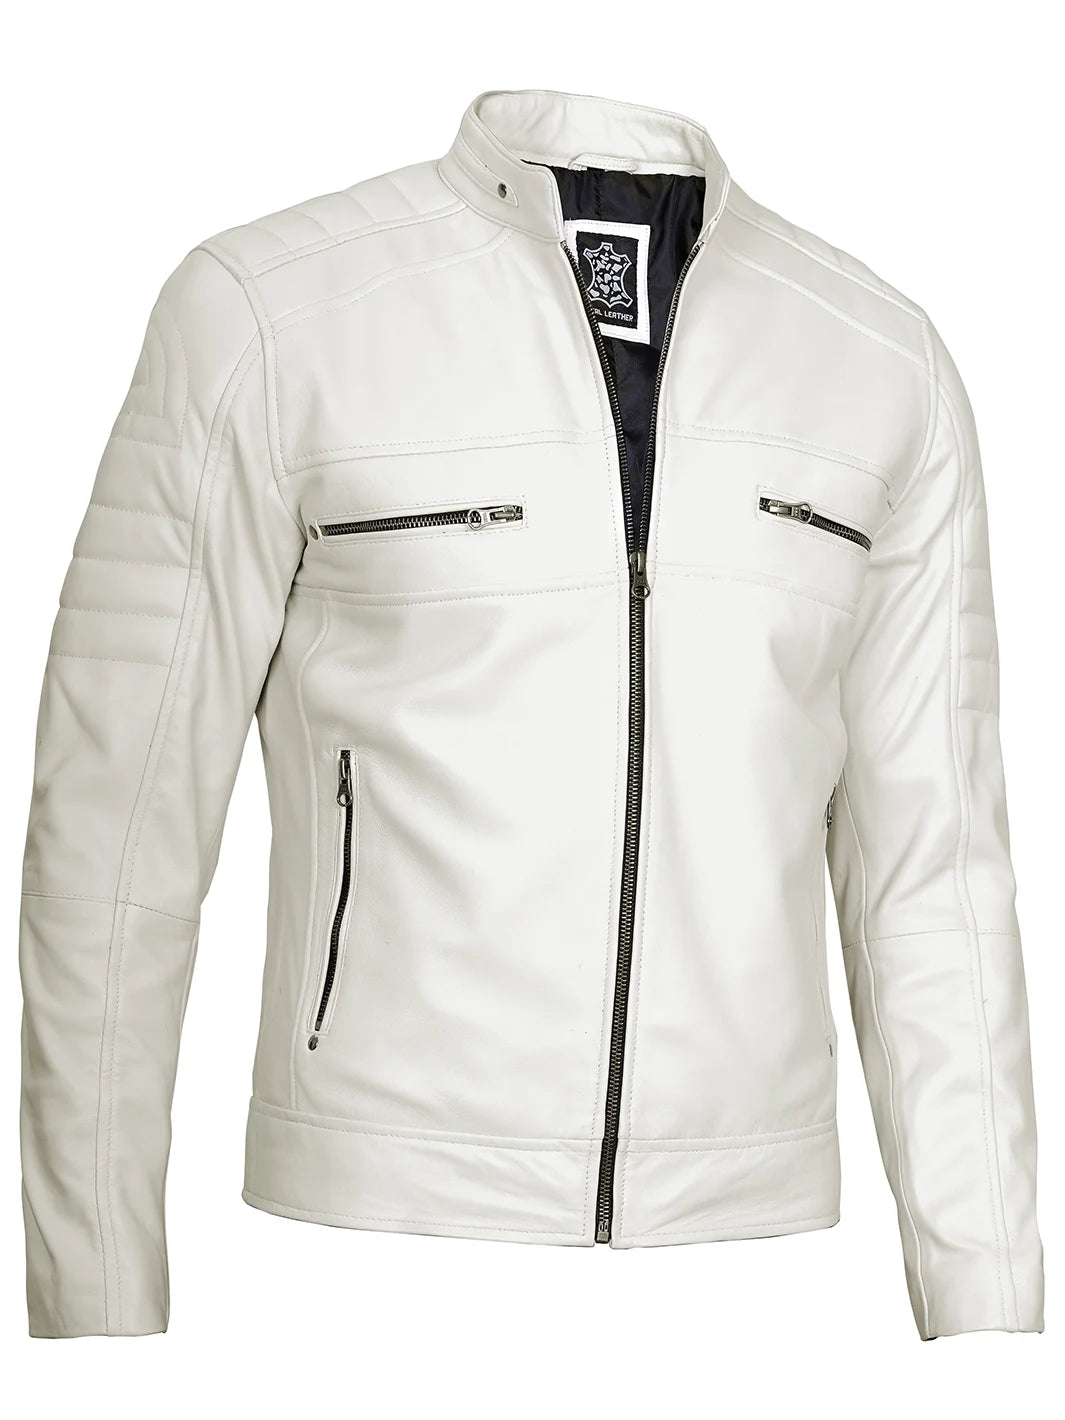 Cafe racer leather jacket for men